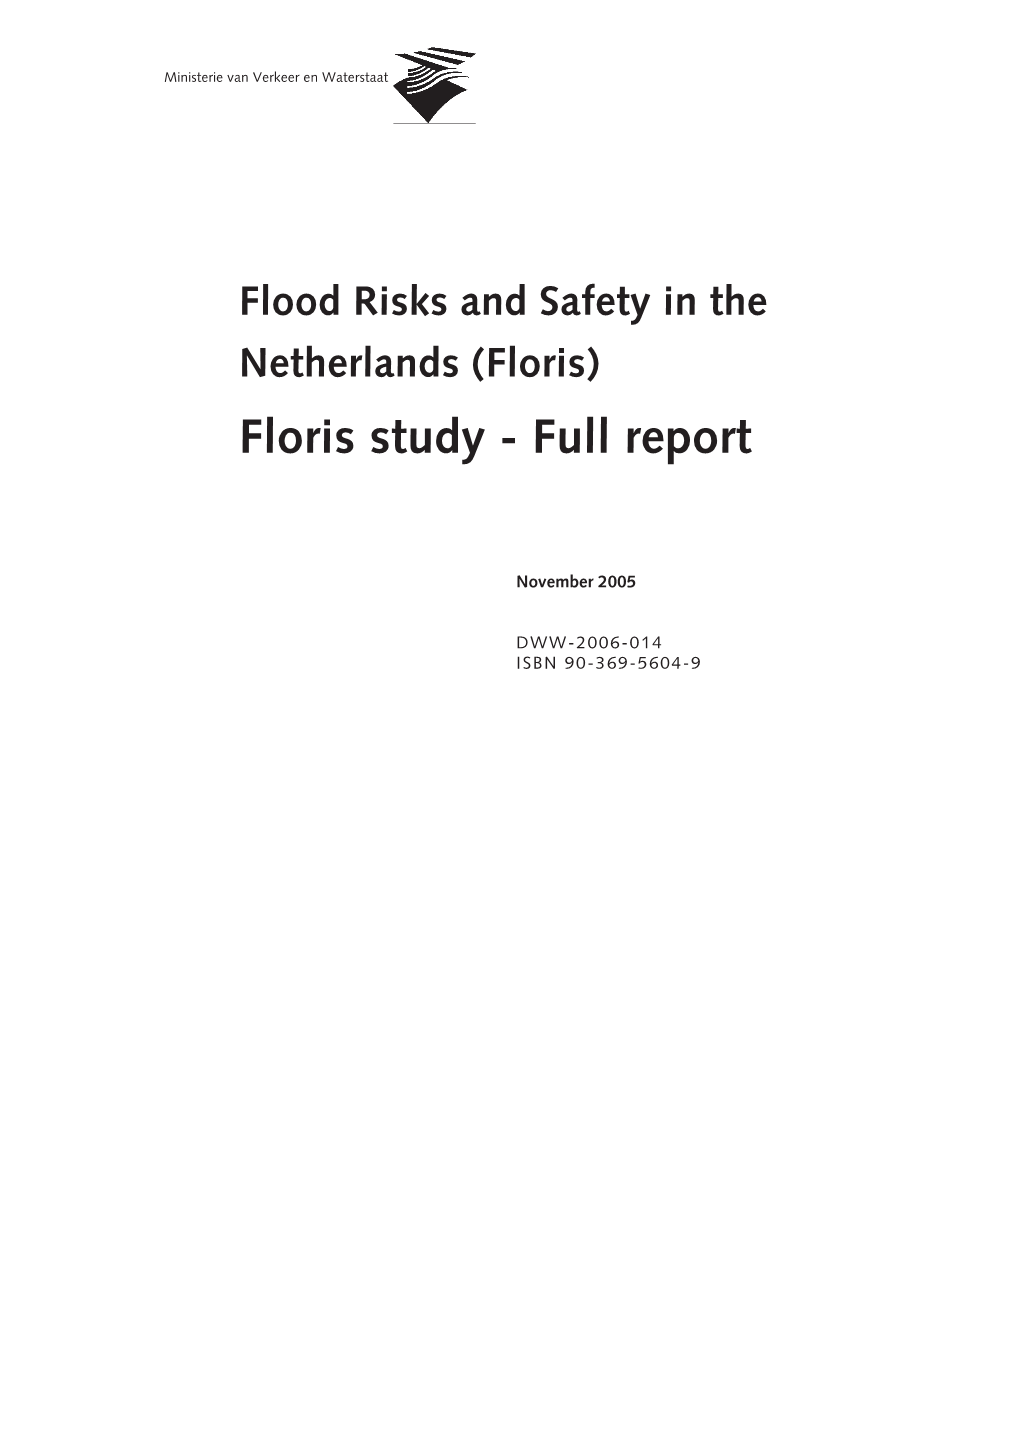 Floris Study - Full Report